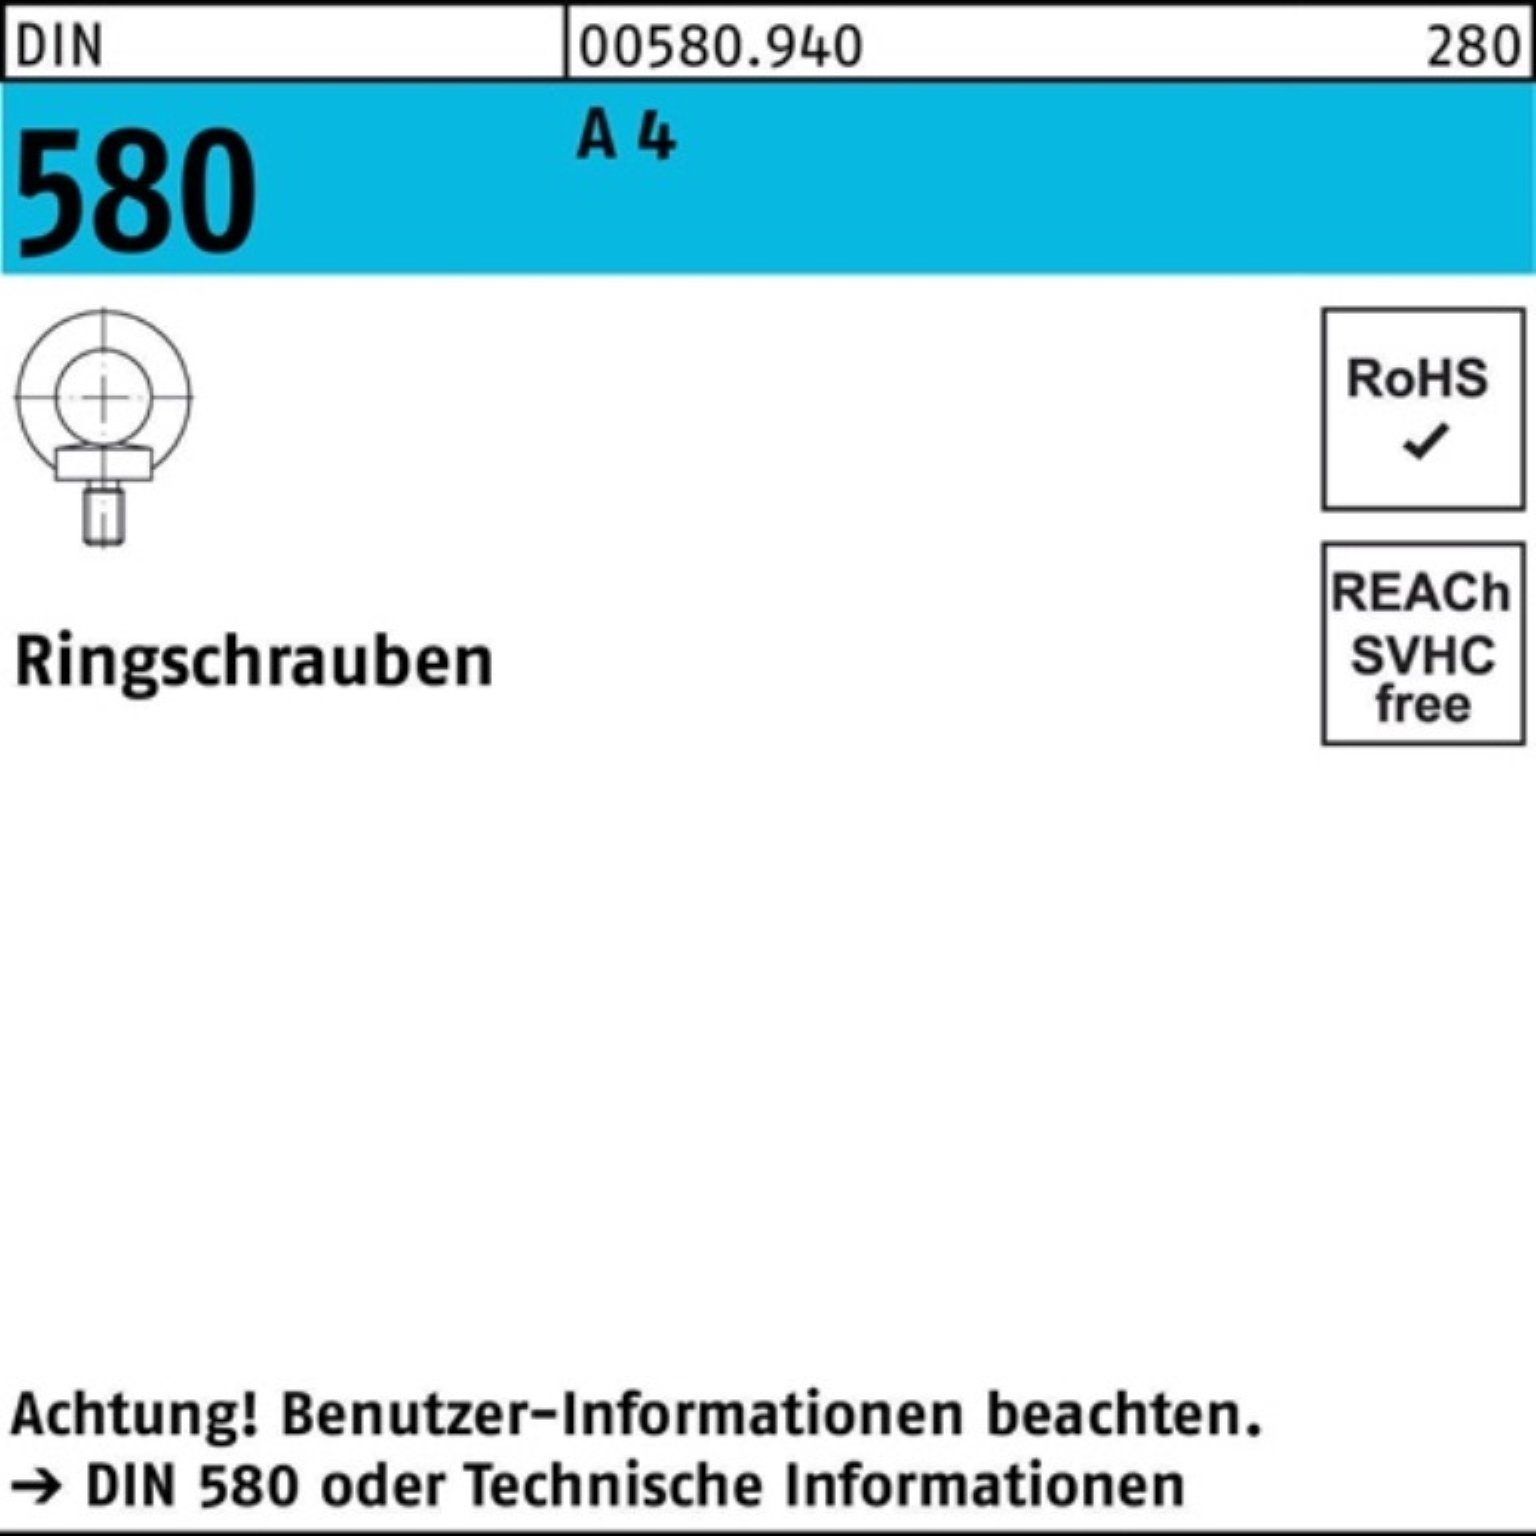 Reyher Schraube 100er Pack Ringschraube DIN 580 M10 A 4 1 Stück DIN 580 A 4 Ringschra